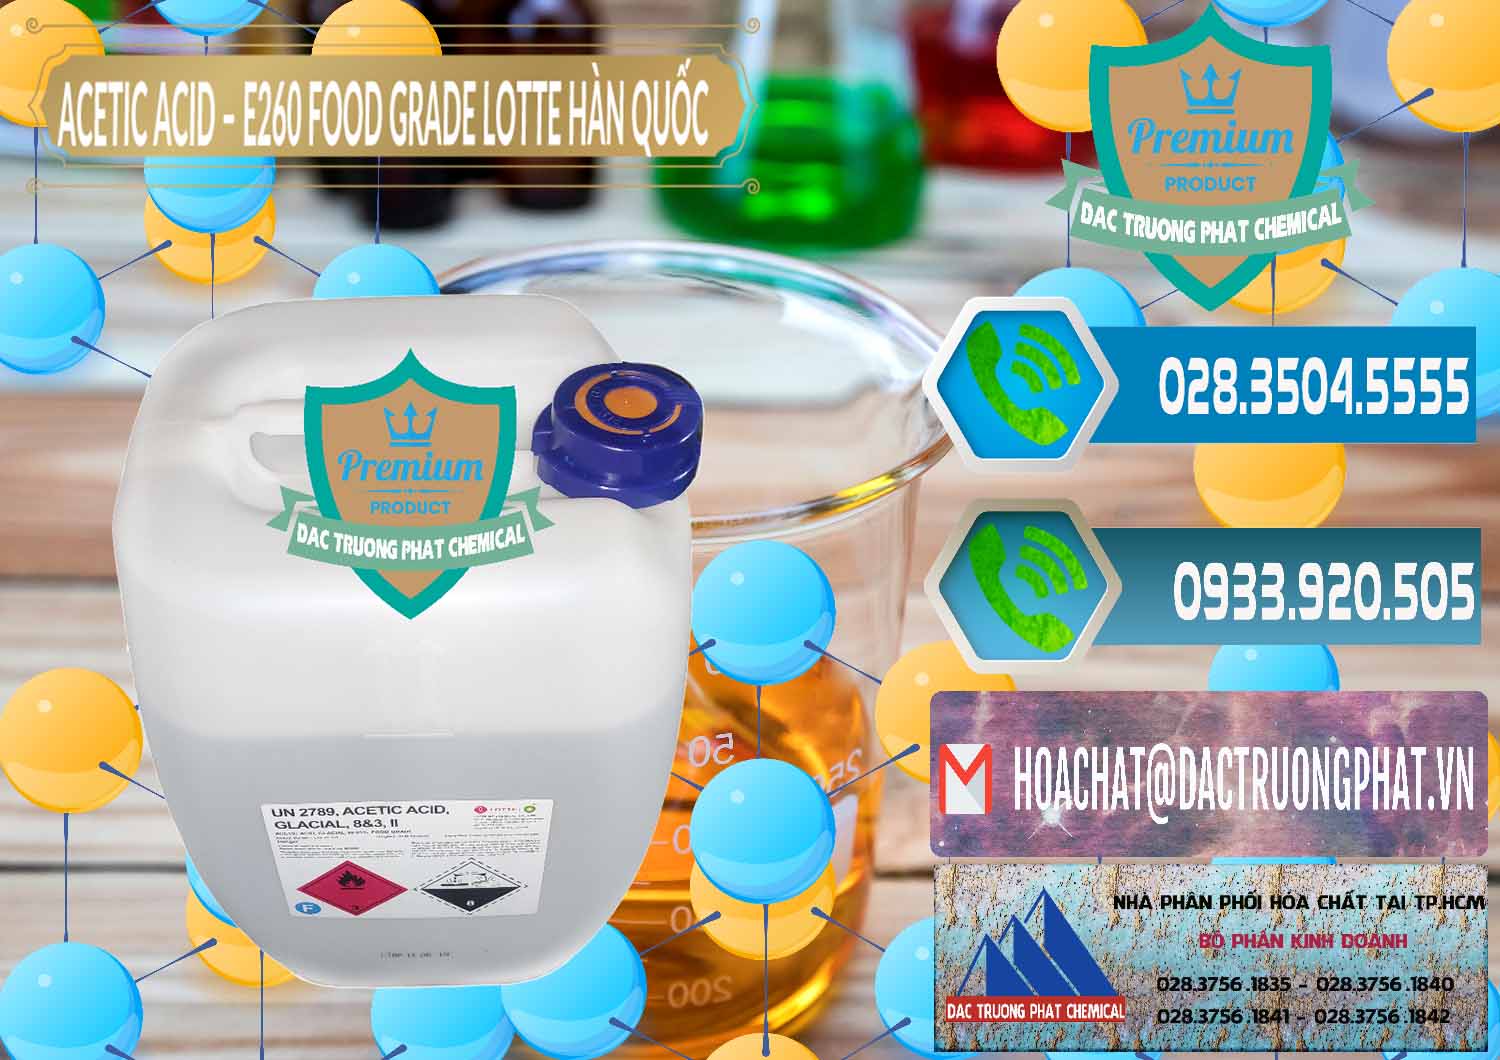 Chuyên phân phối & bán Acetic Acid – Axit Acetic E260 Food Grade Hàn Quốc Lotte Korea - 0003 - Nhà cung cấp và nhập khẩu hóa chất tại TP.HCM - congtyhoachat.net